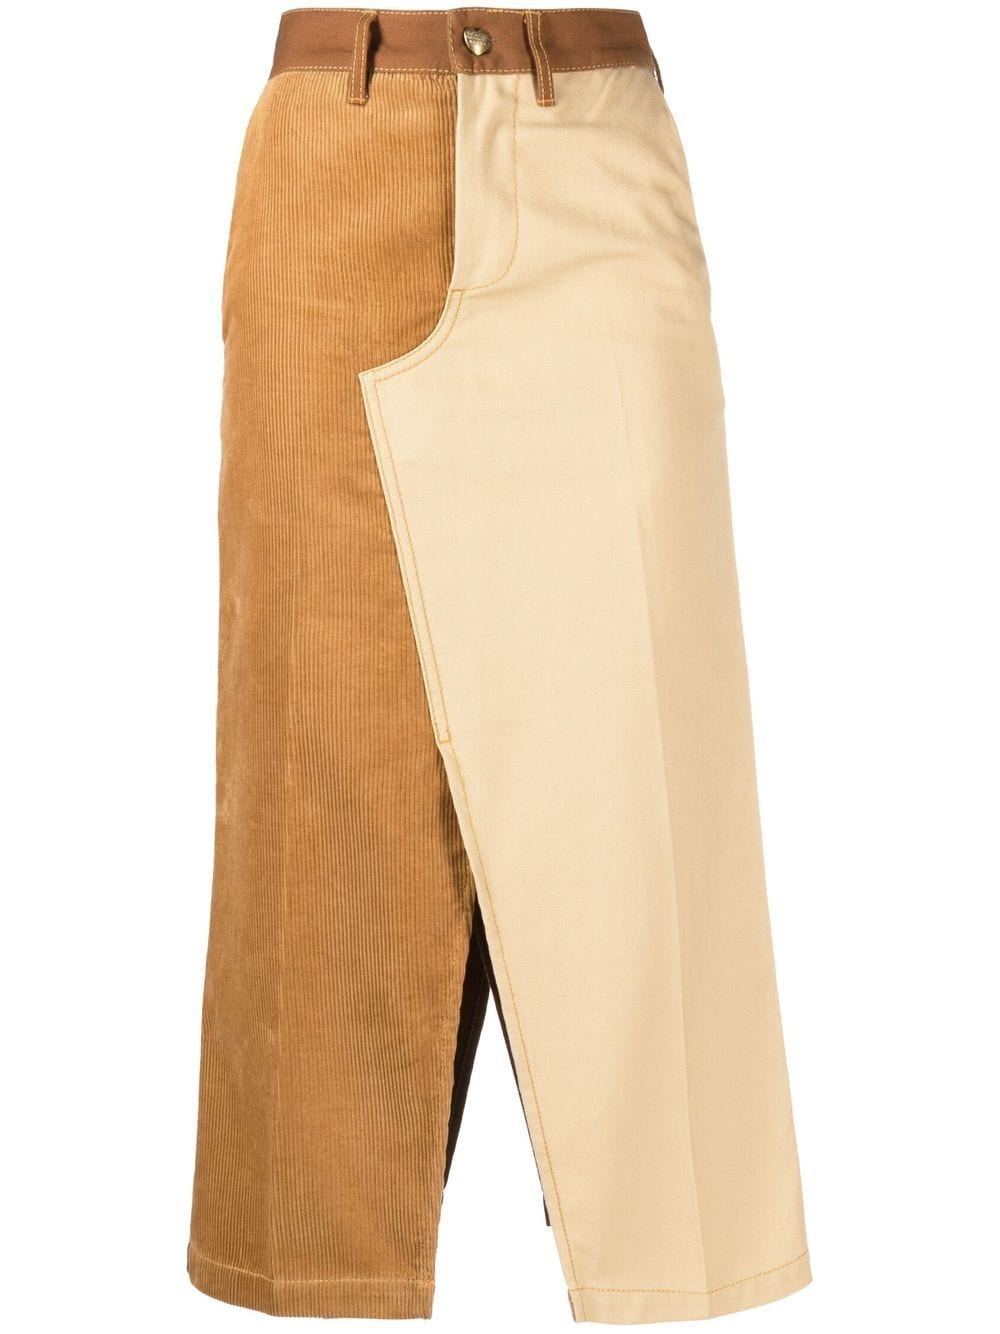 Two-tone cotton midi skirt